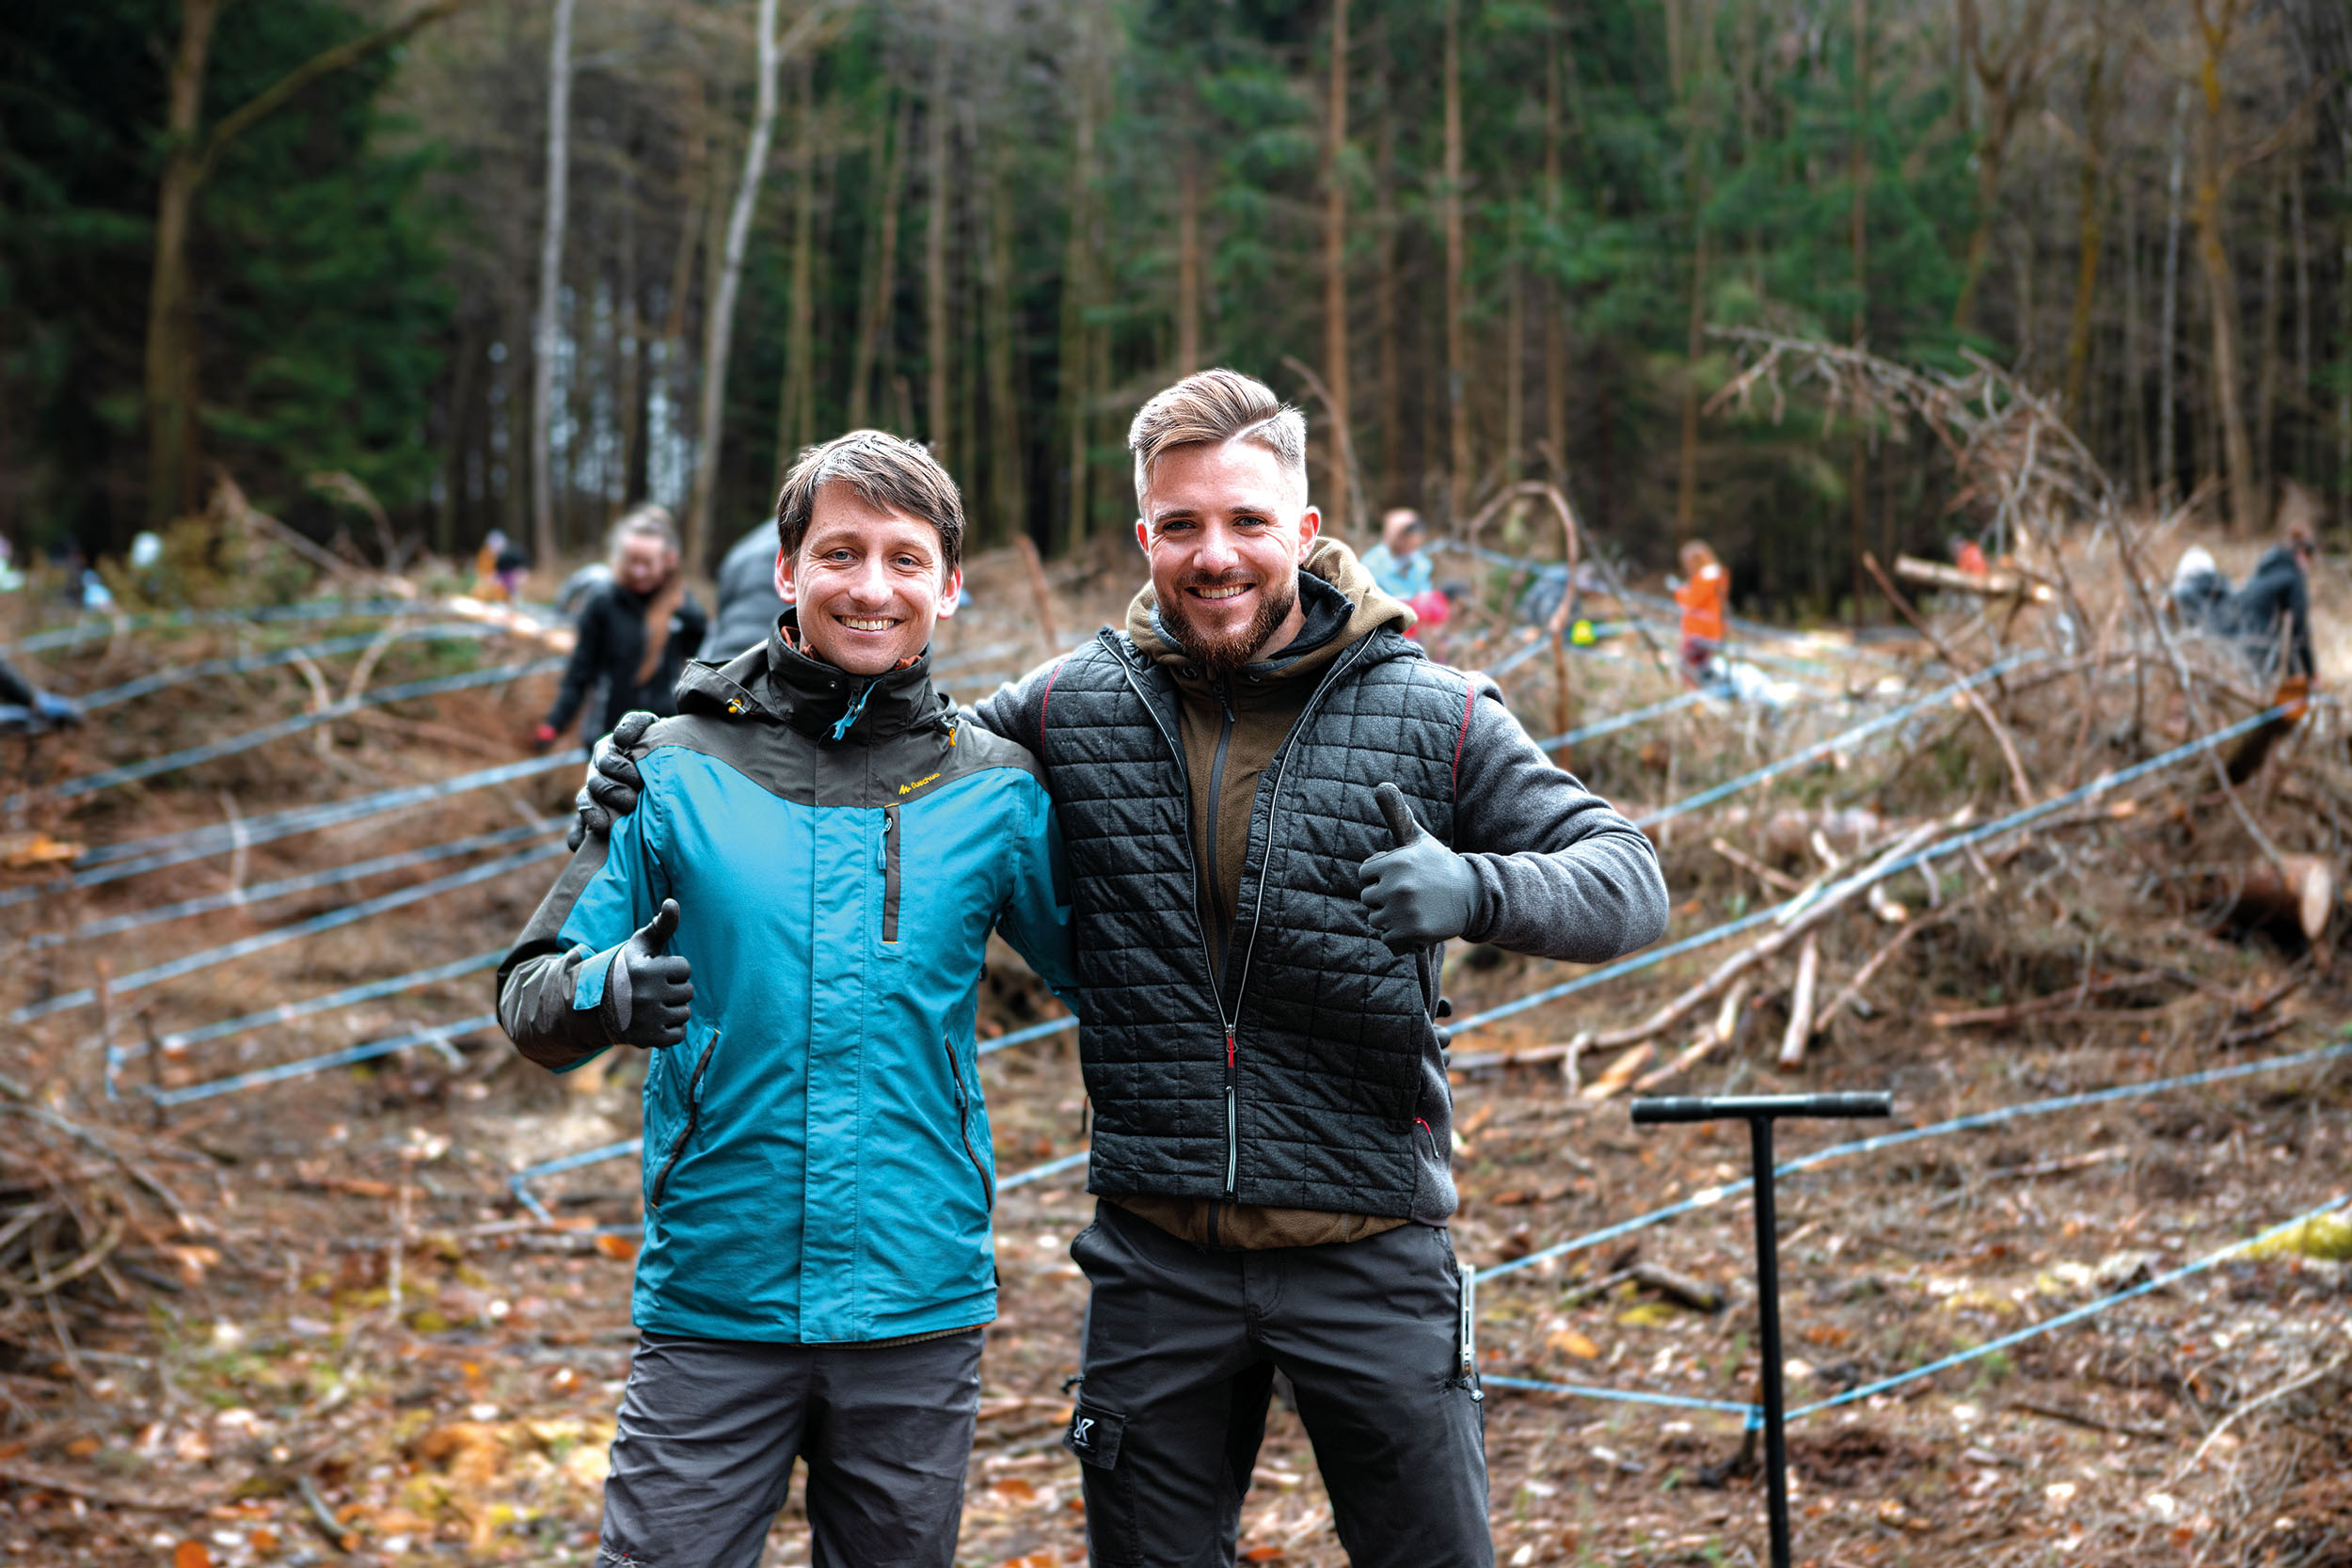 Za projektem na obnovu lesů stojí osmadvacetiletý Richard Krajník (vlevo), sedmadvacetiletý Filip Hradil a jejich společnost PlanetWe Rewild.